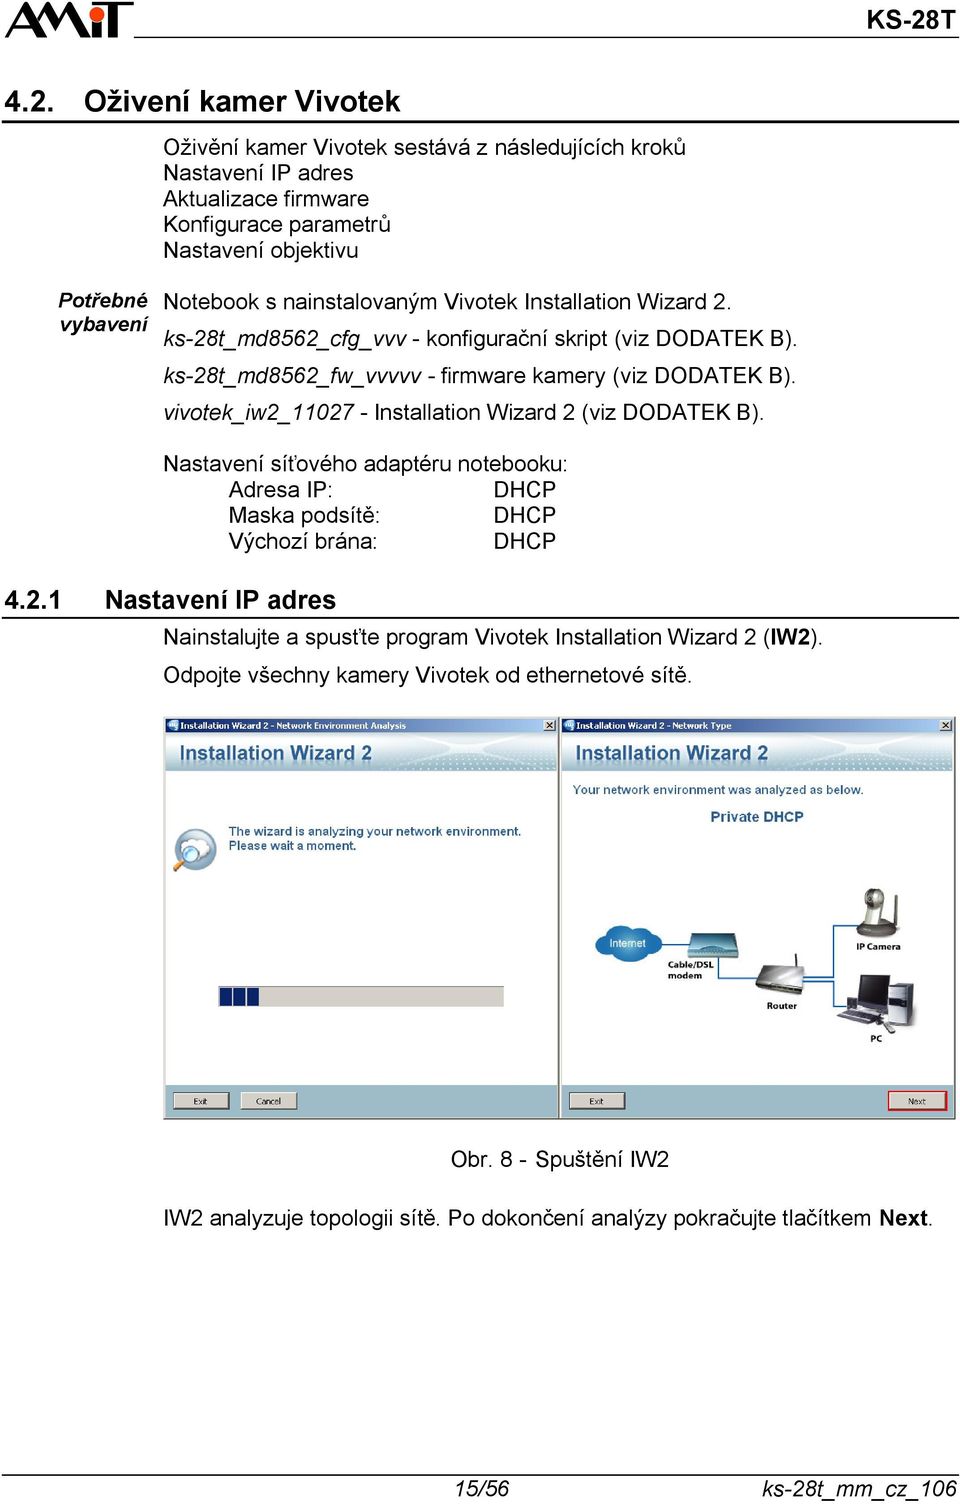 vivotek_iw2_11027 - Installation Wizard 2 (viz DODATEK B). Nastavení síťového adaptéru notebooku: Adresa IP: DHCP Maska podsítě: DHCP Výchozí brána: DHCP 4.2.1 Nastavení IP adres Nainstalujte a spusťte program Vivotek Installation Wizard 2 (IW2).